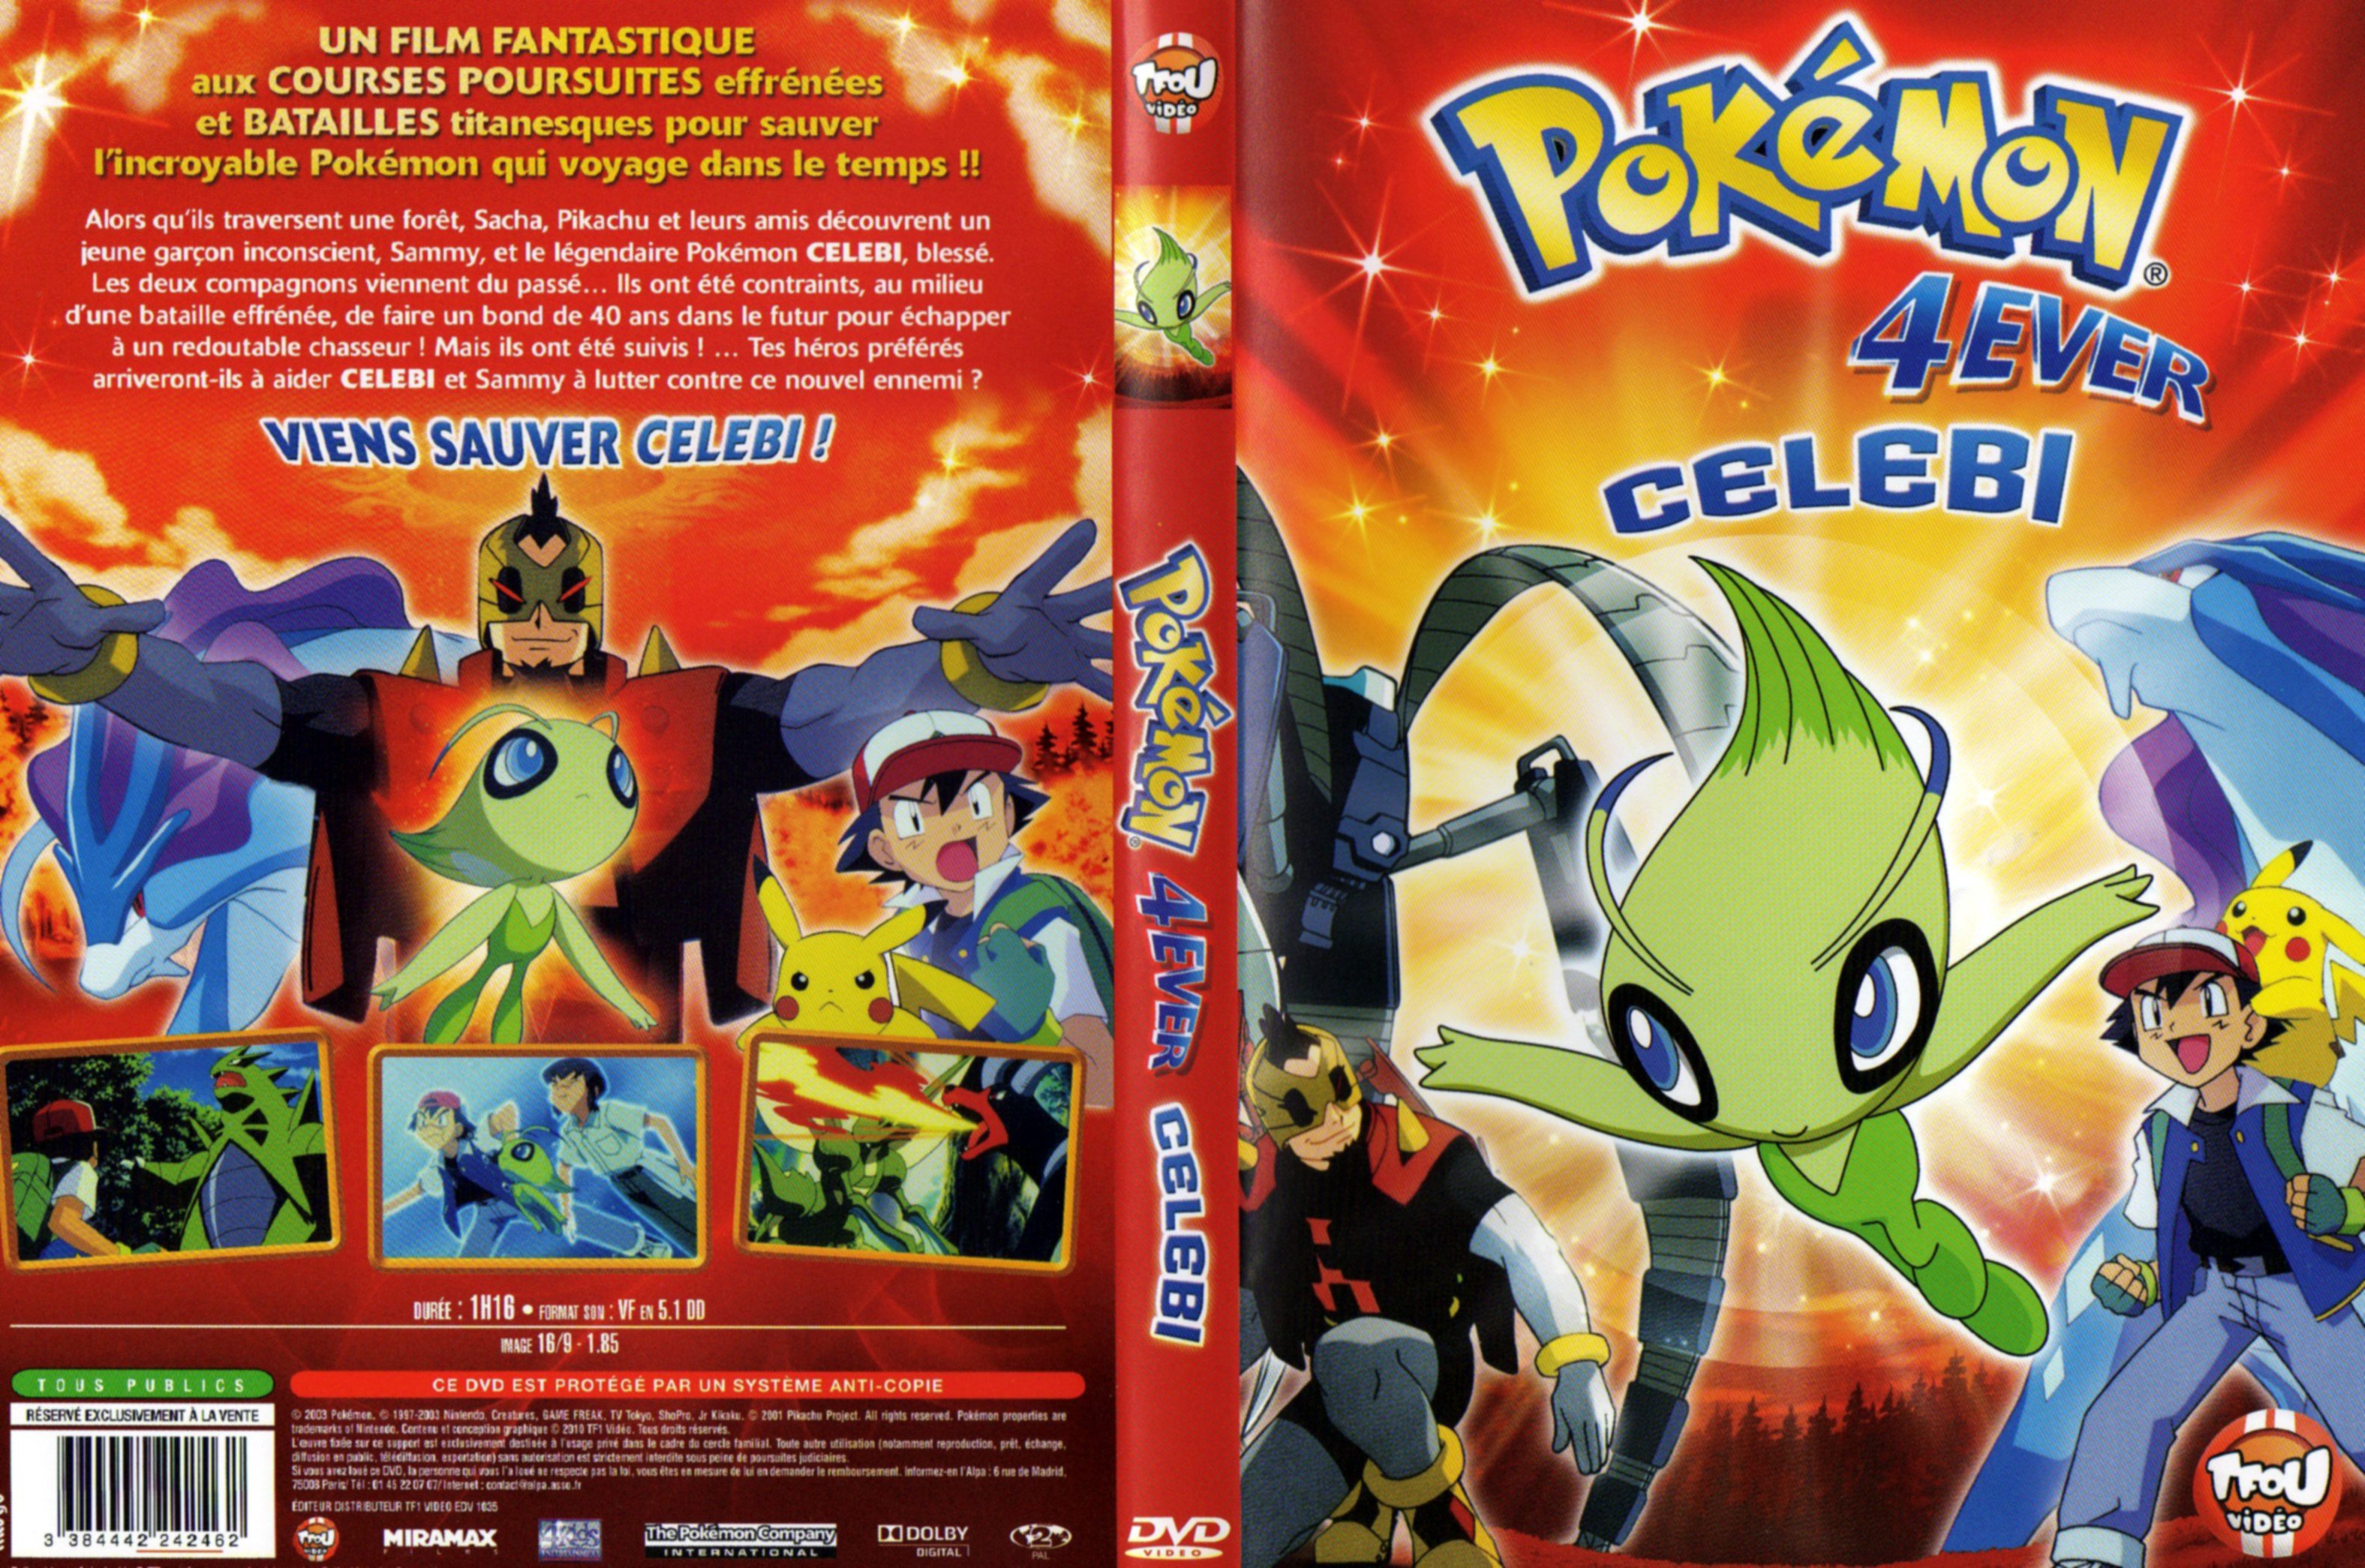 Jaquette DVD Pokemon 4ever - Celebi 